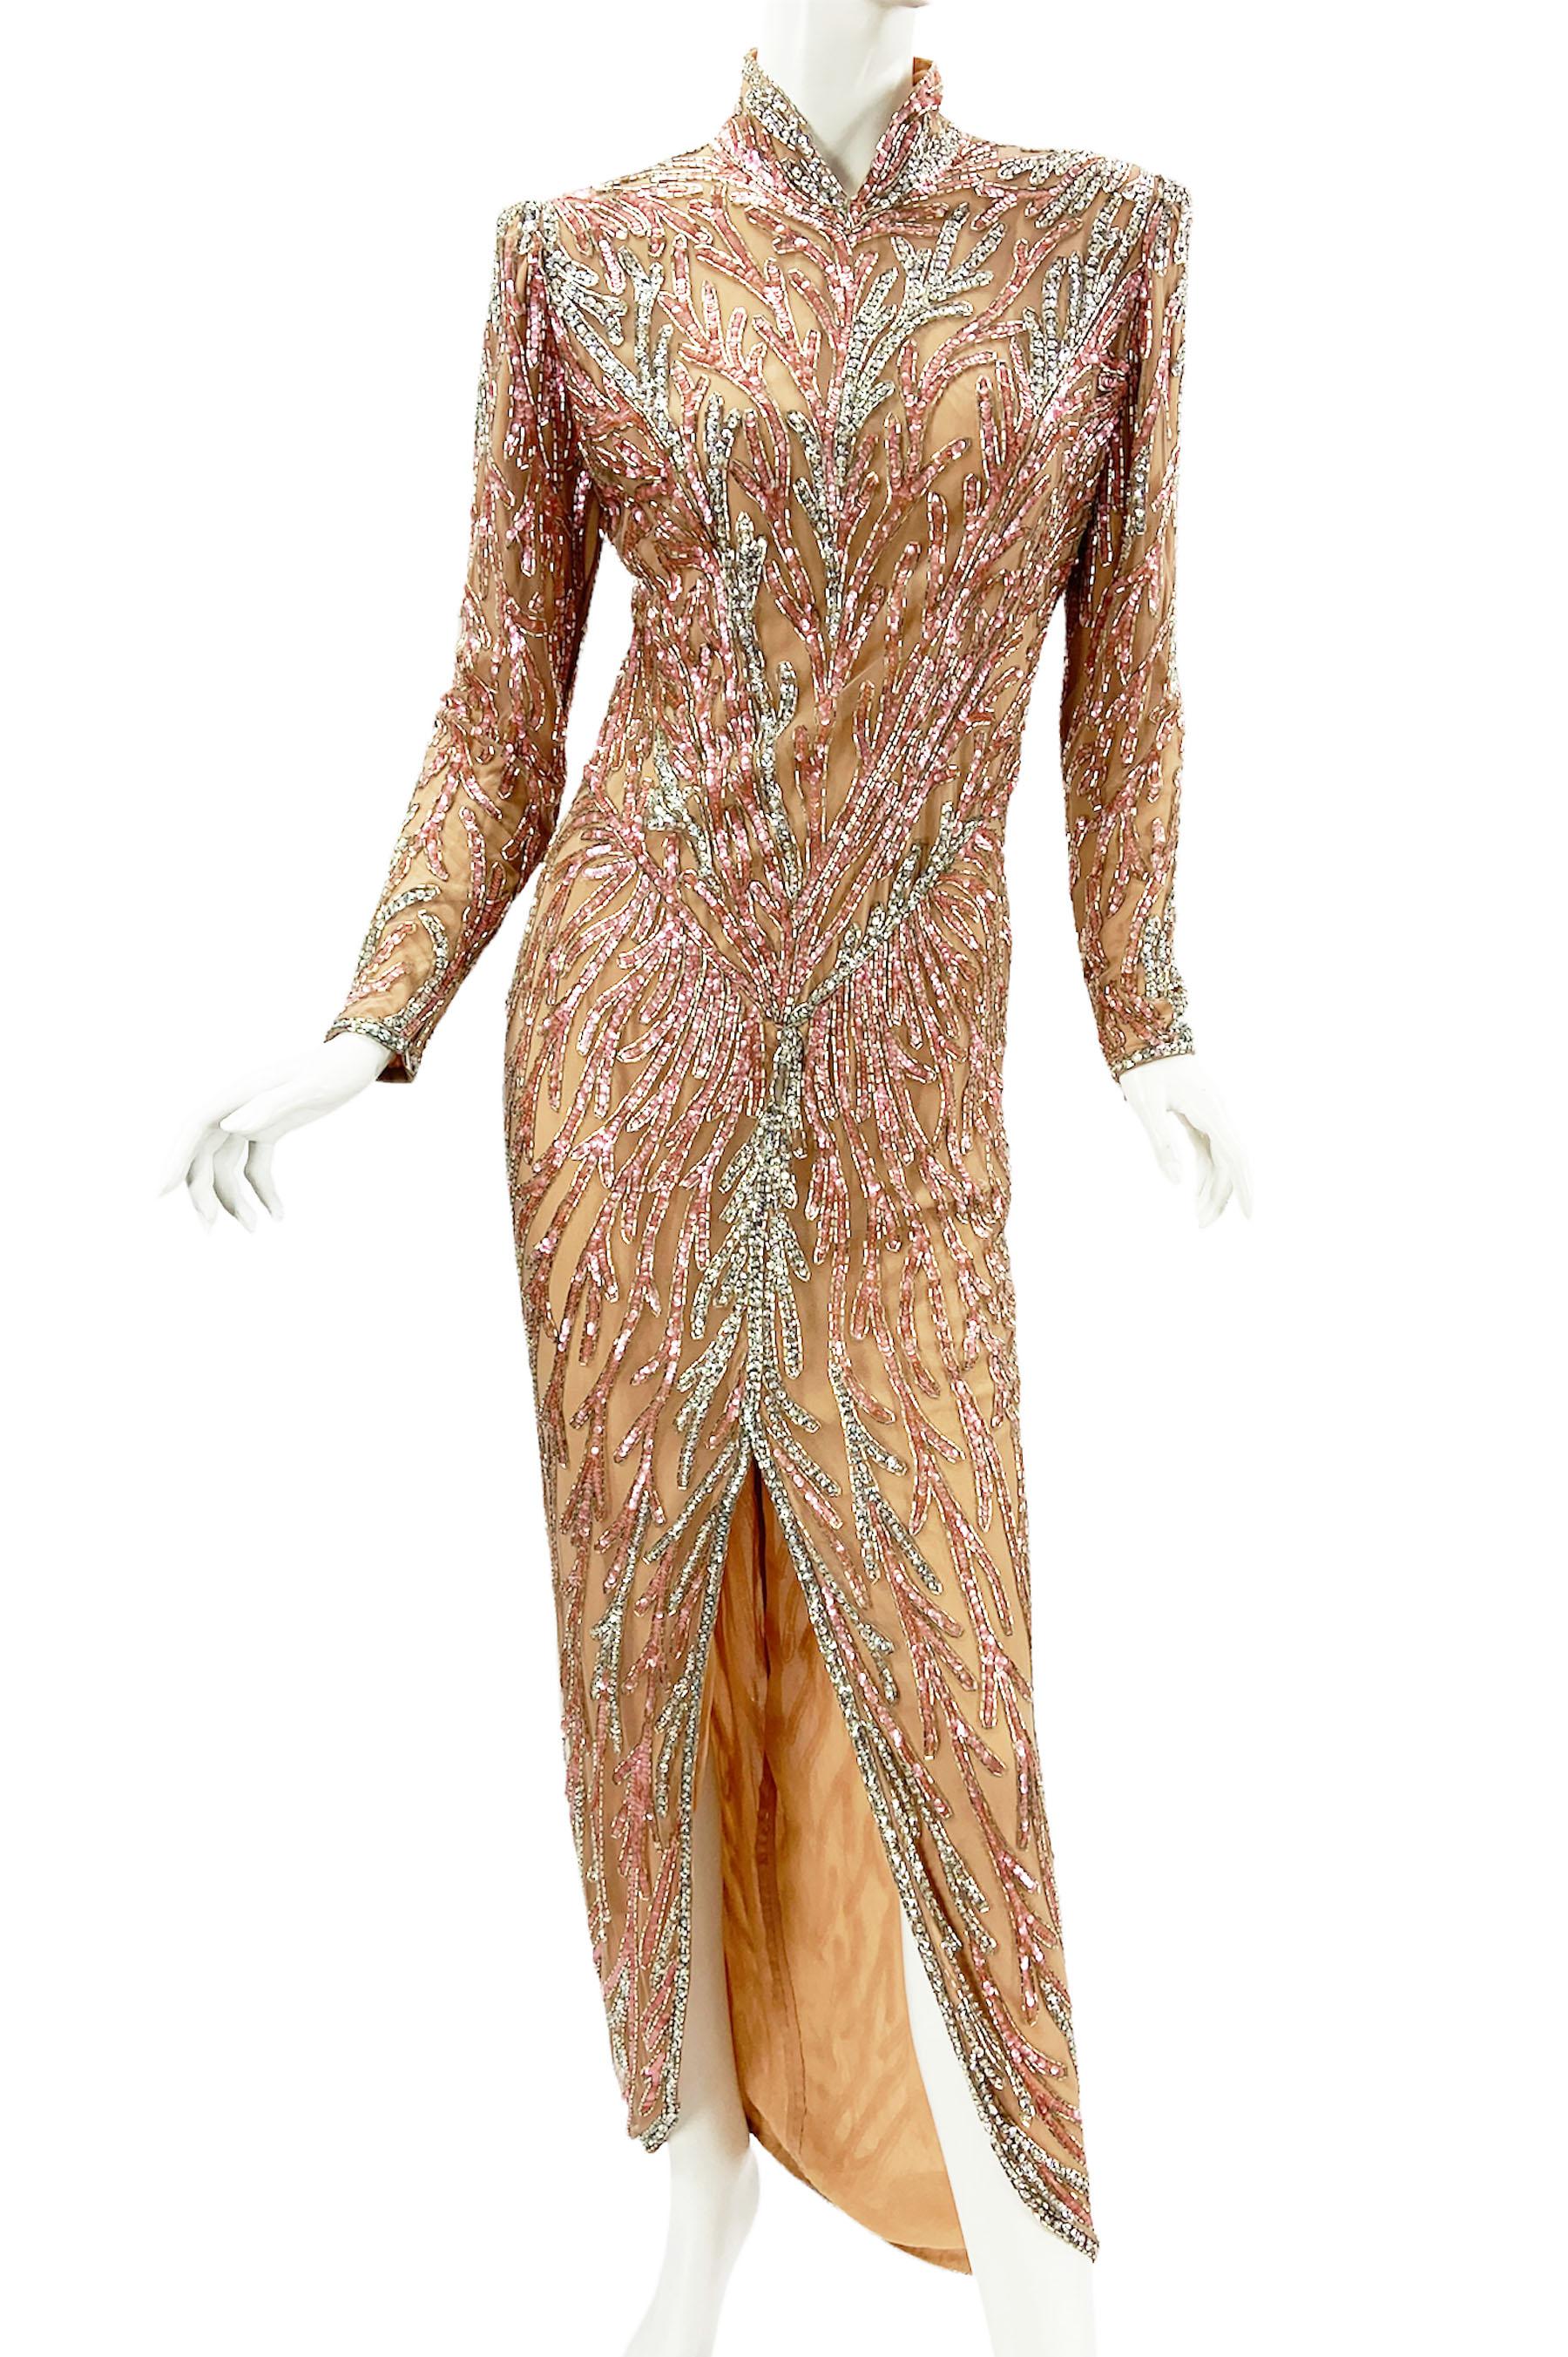 Vintage Bob Mackie Robe longue entièrement embellie
La version bustier de cette robe a été portée par Goldie Hawn lors de la 66e cérémonie des Oscars en 1989.
Taille de créateur 12 (la taille moderne sera plus petite - veuillez vérifier les